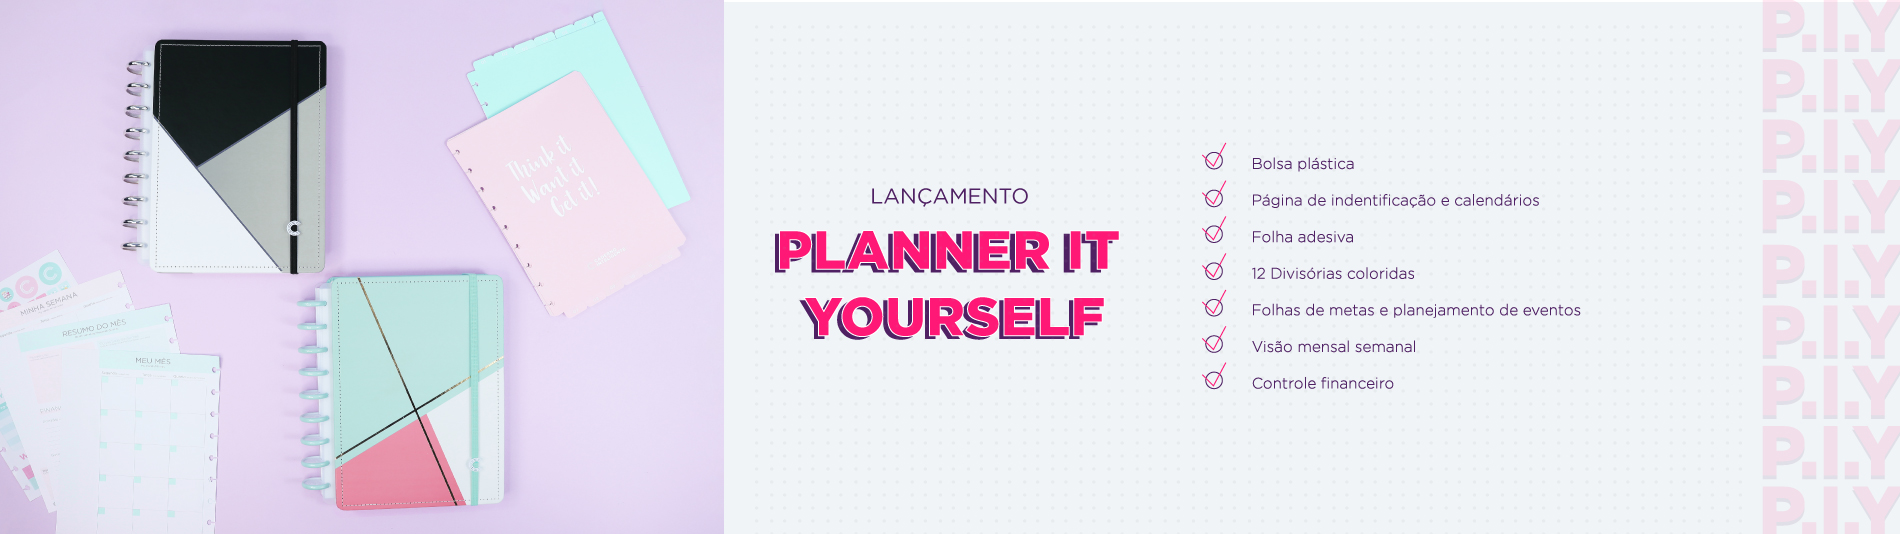 Planeje-se com o Planner Caderno Inteligente PIY (Planner It